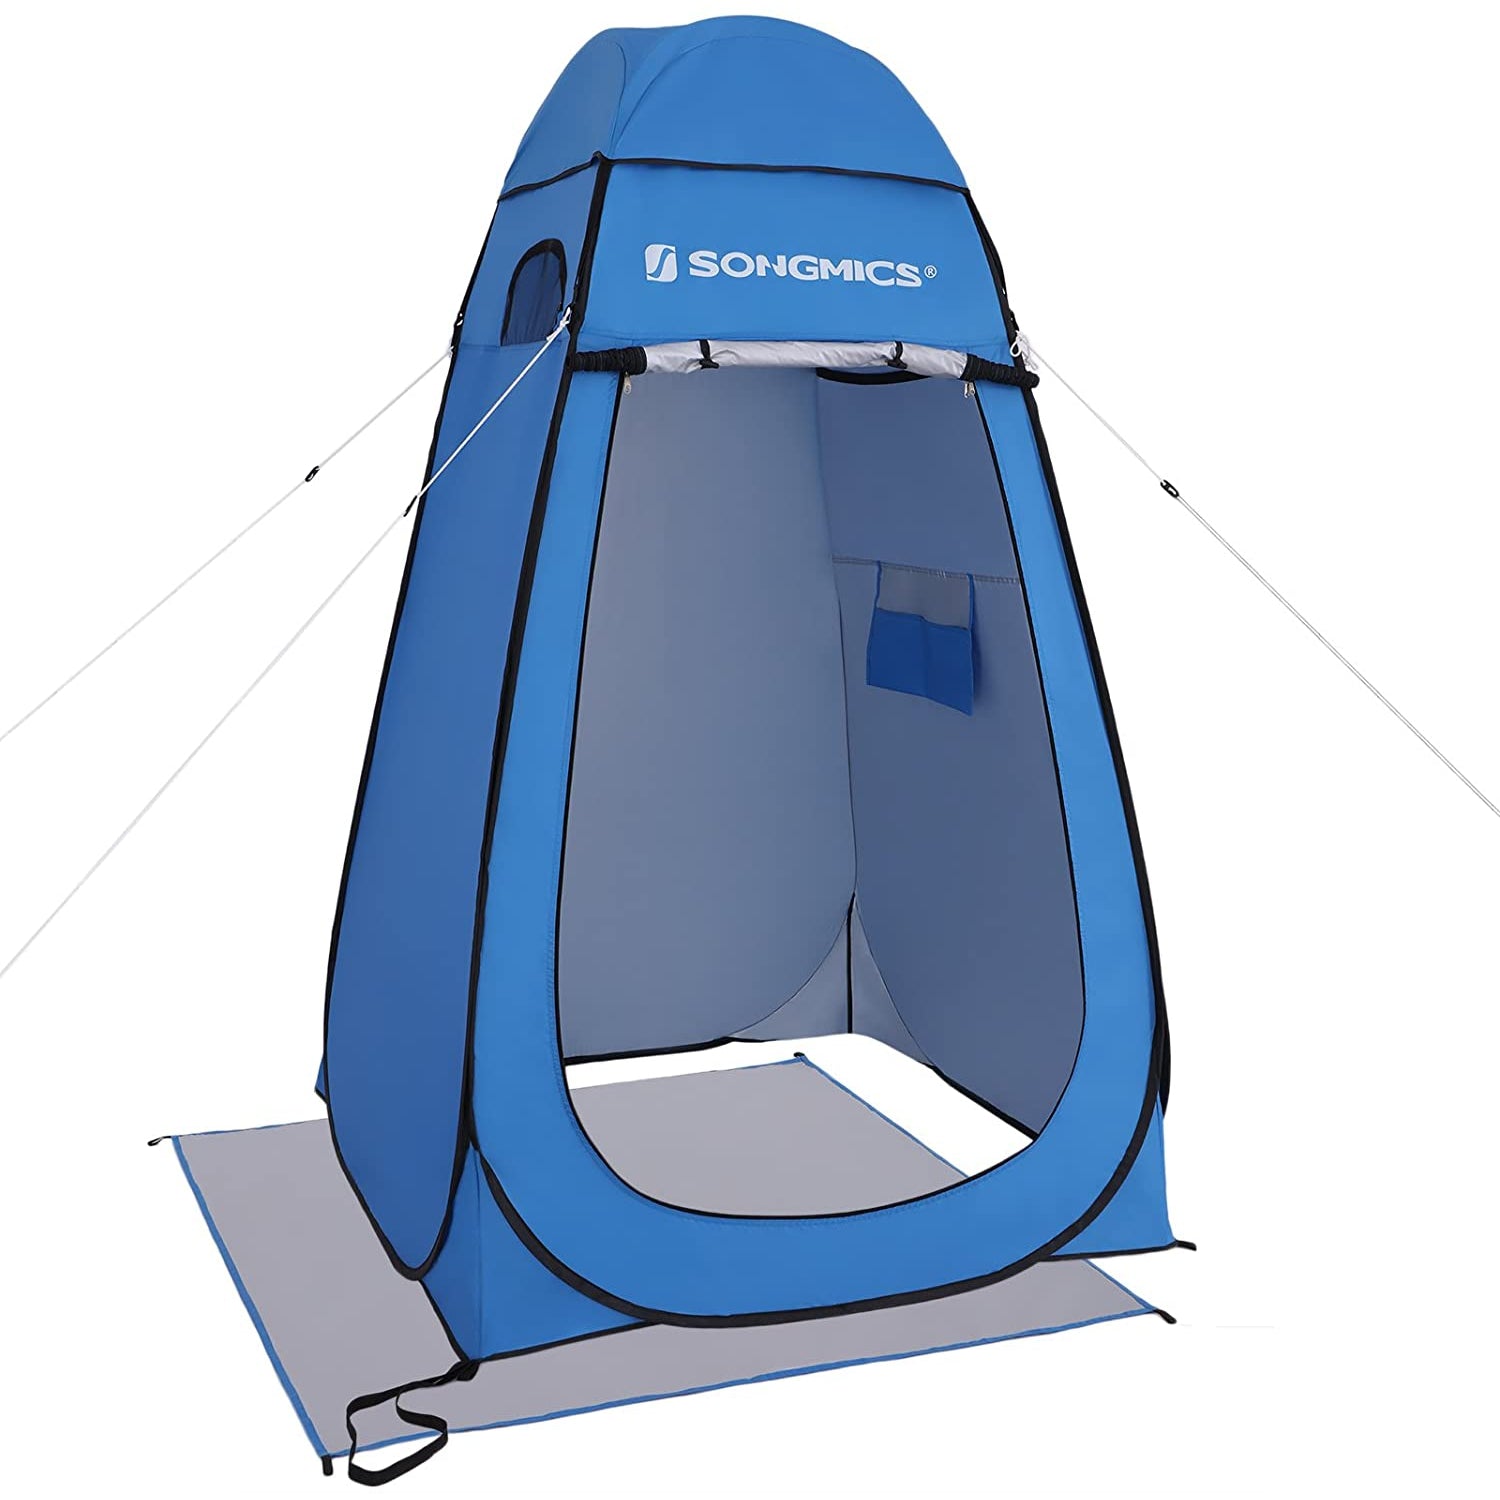 Tente Pop-Up Nancy's Caistor - Tente à langer - Tente haute - Pêche - Plage - Sac de transport - Fermeture éclair - Bleu - 120 x 120 x 190 cm